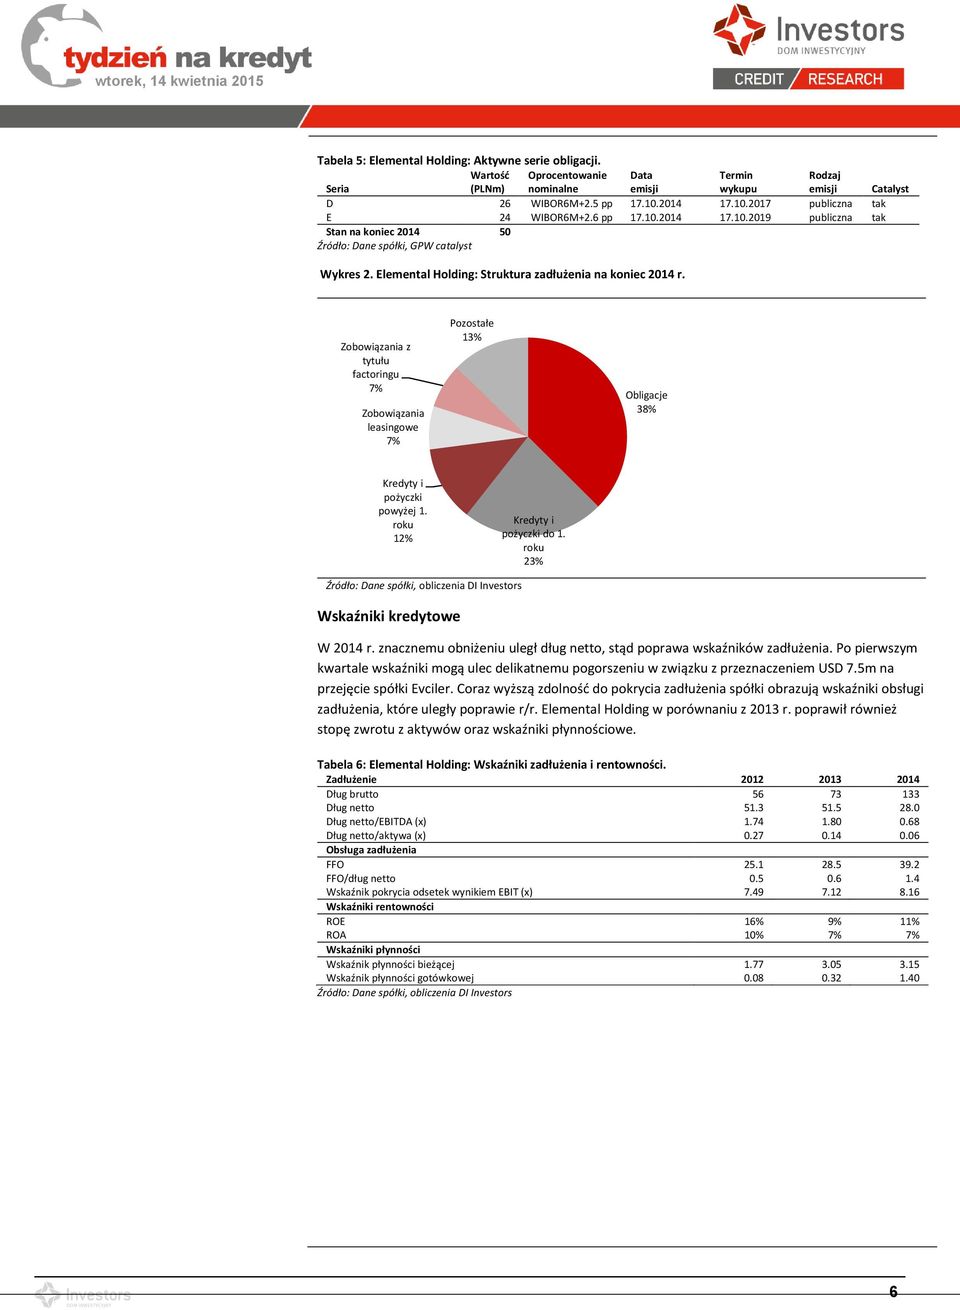 Elemental Holding: Struktura zadłużenia na koniec 2014 r. Zobowiązania z tytułu factoringu 7% Zobowiązania leasingowe 7% Pozostałe 13% Obligacje 38% Kredyty i pożyczki powyżej 1.